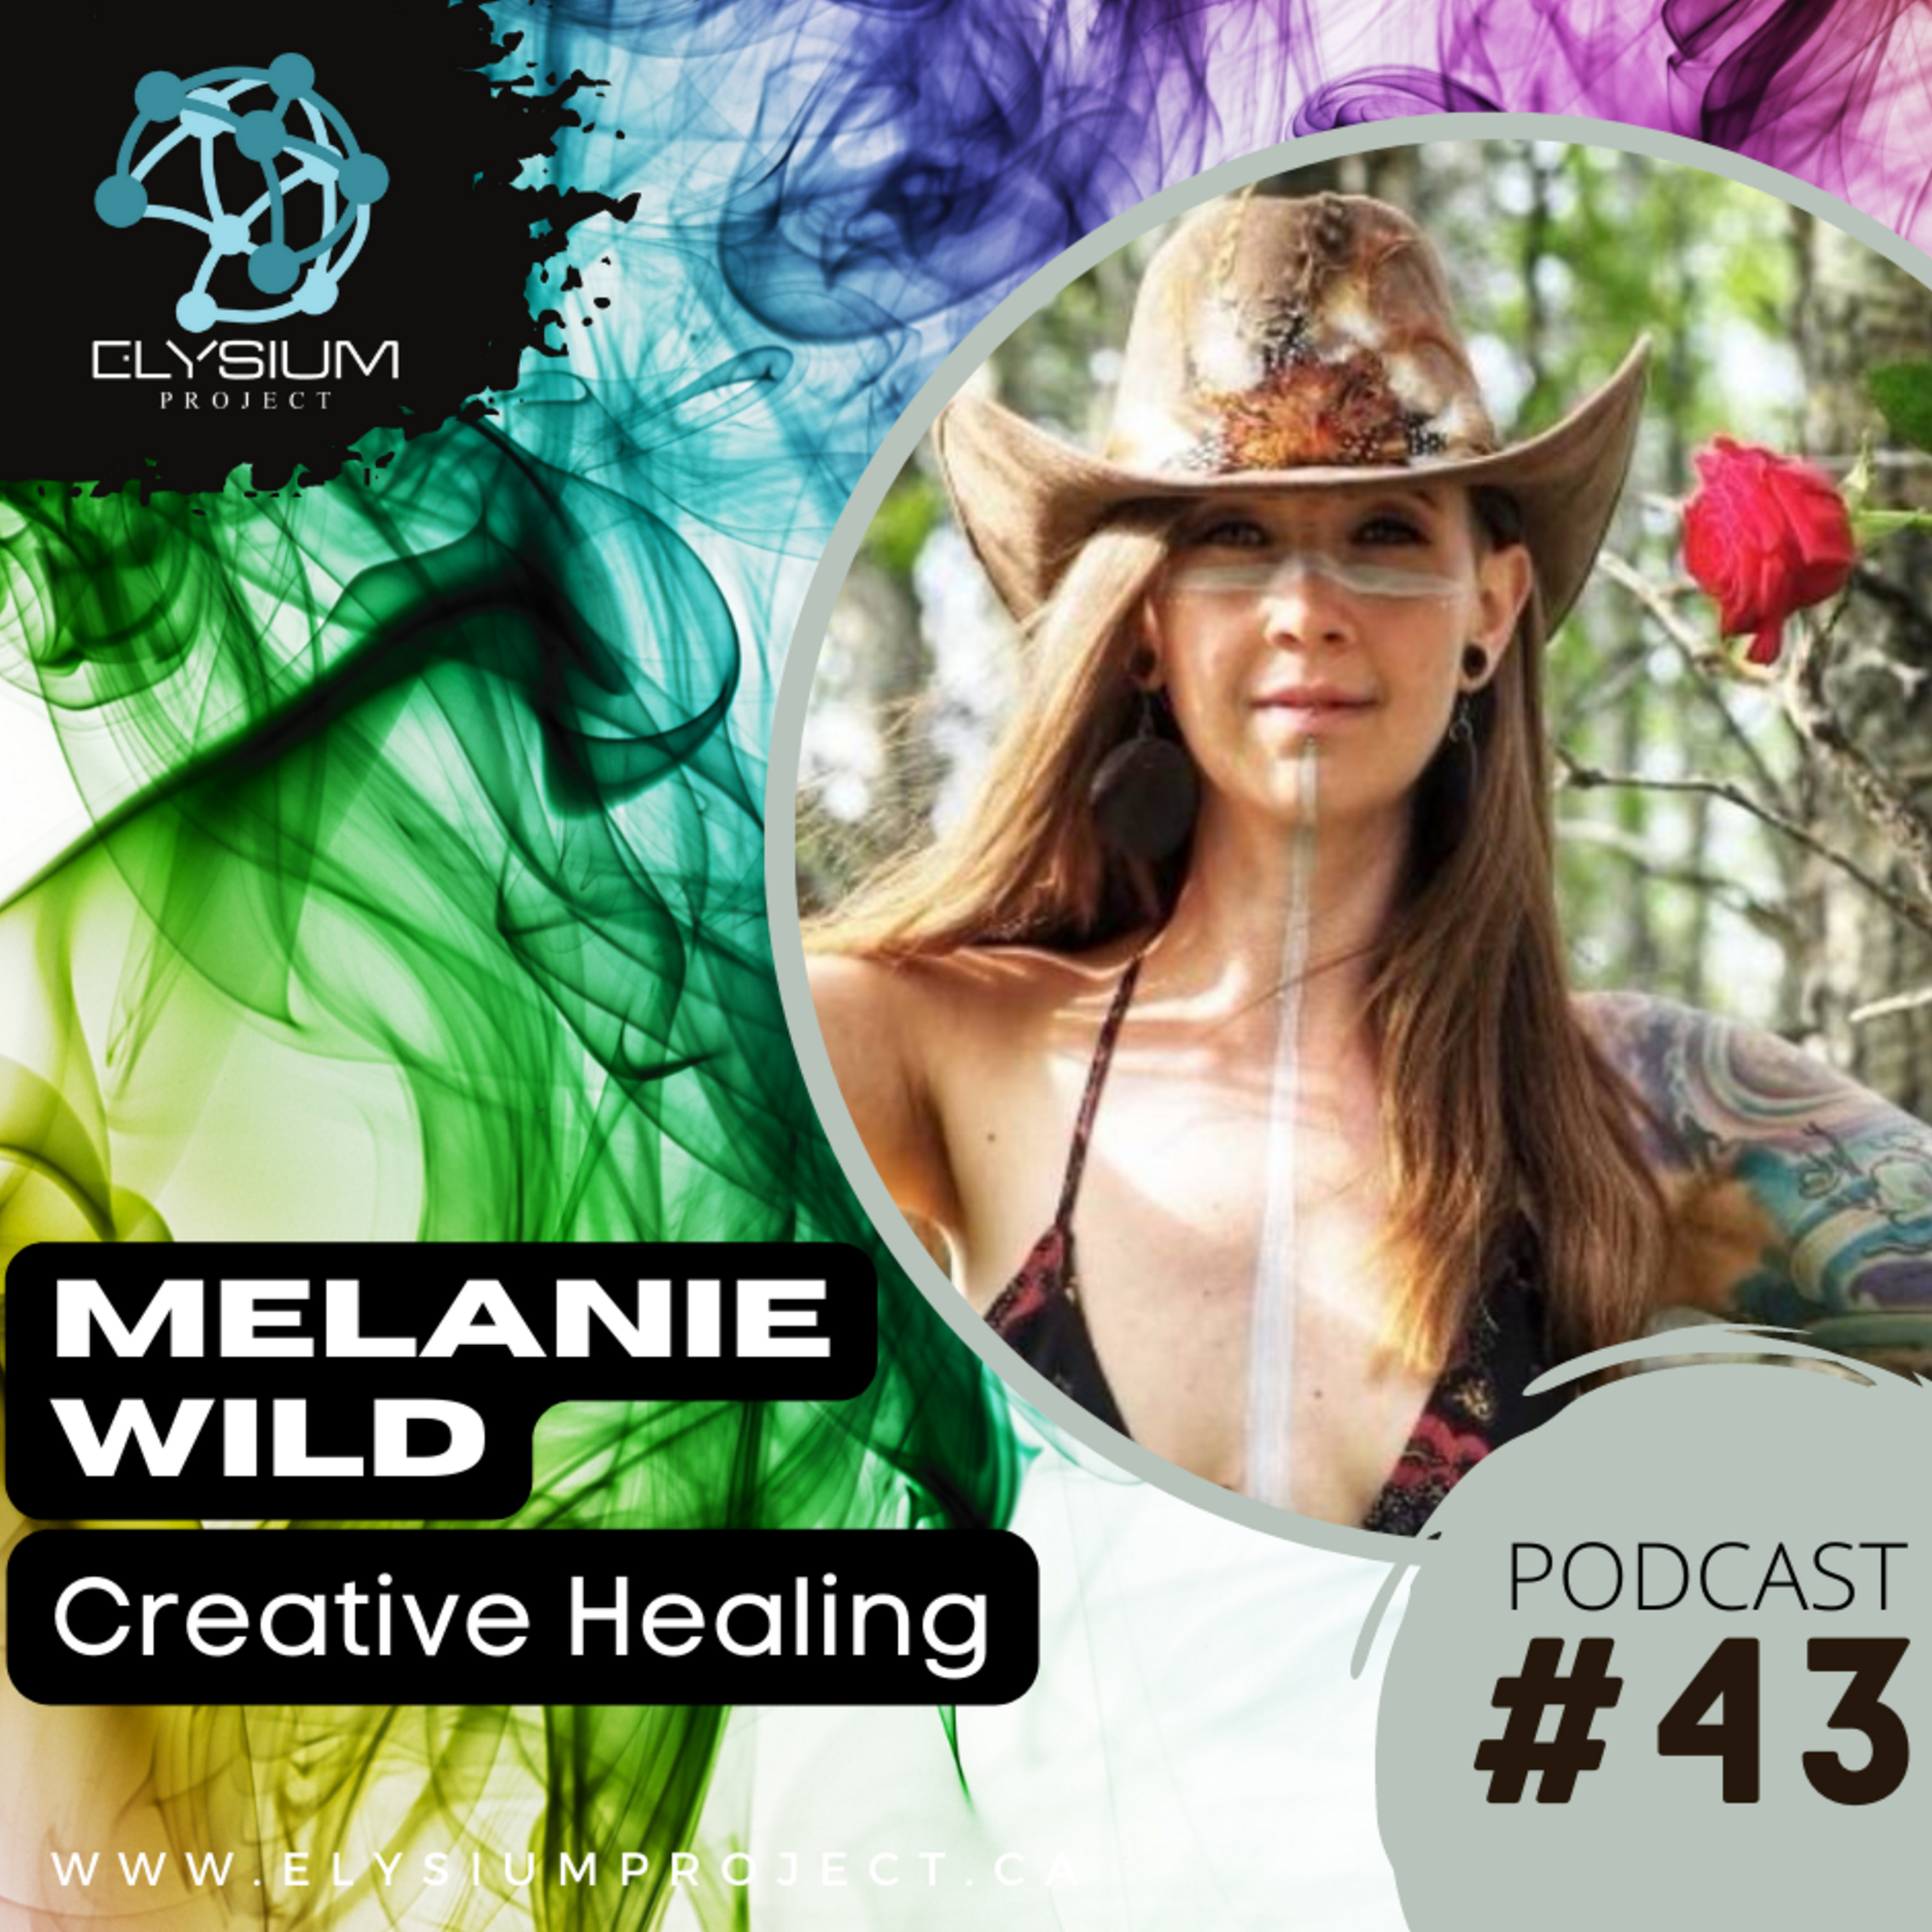 Episode 43: Creative Healing with Melanie Wild